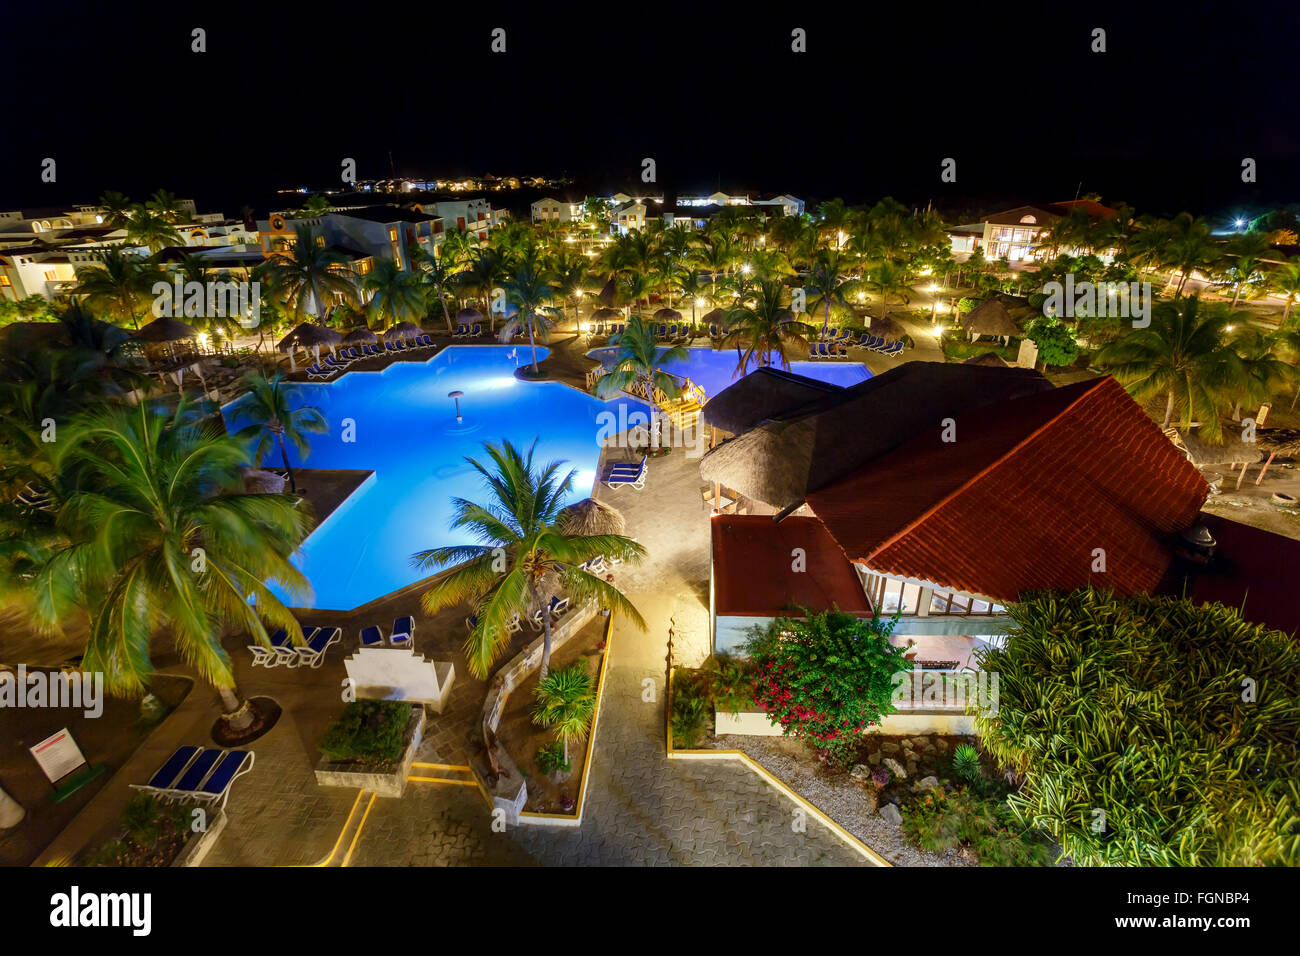 Ver en el hotel y piscina de noche, Cayo Largo, Cuba Foto de stock